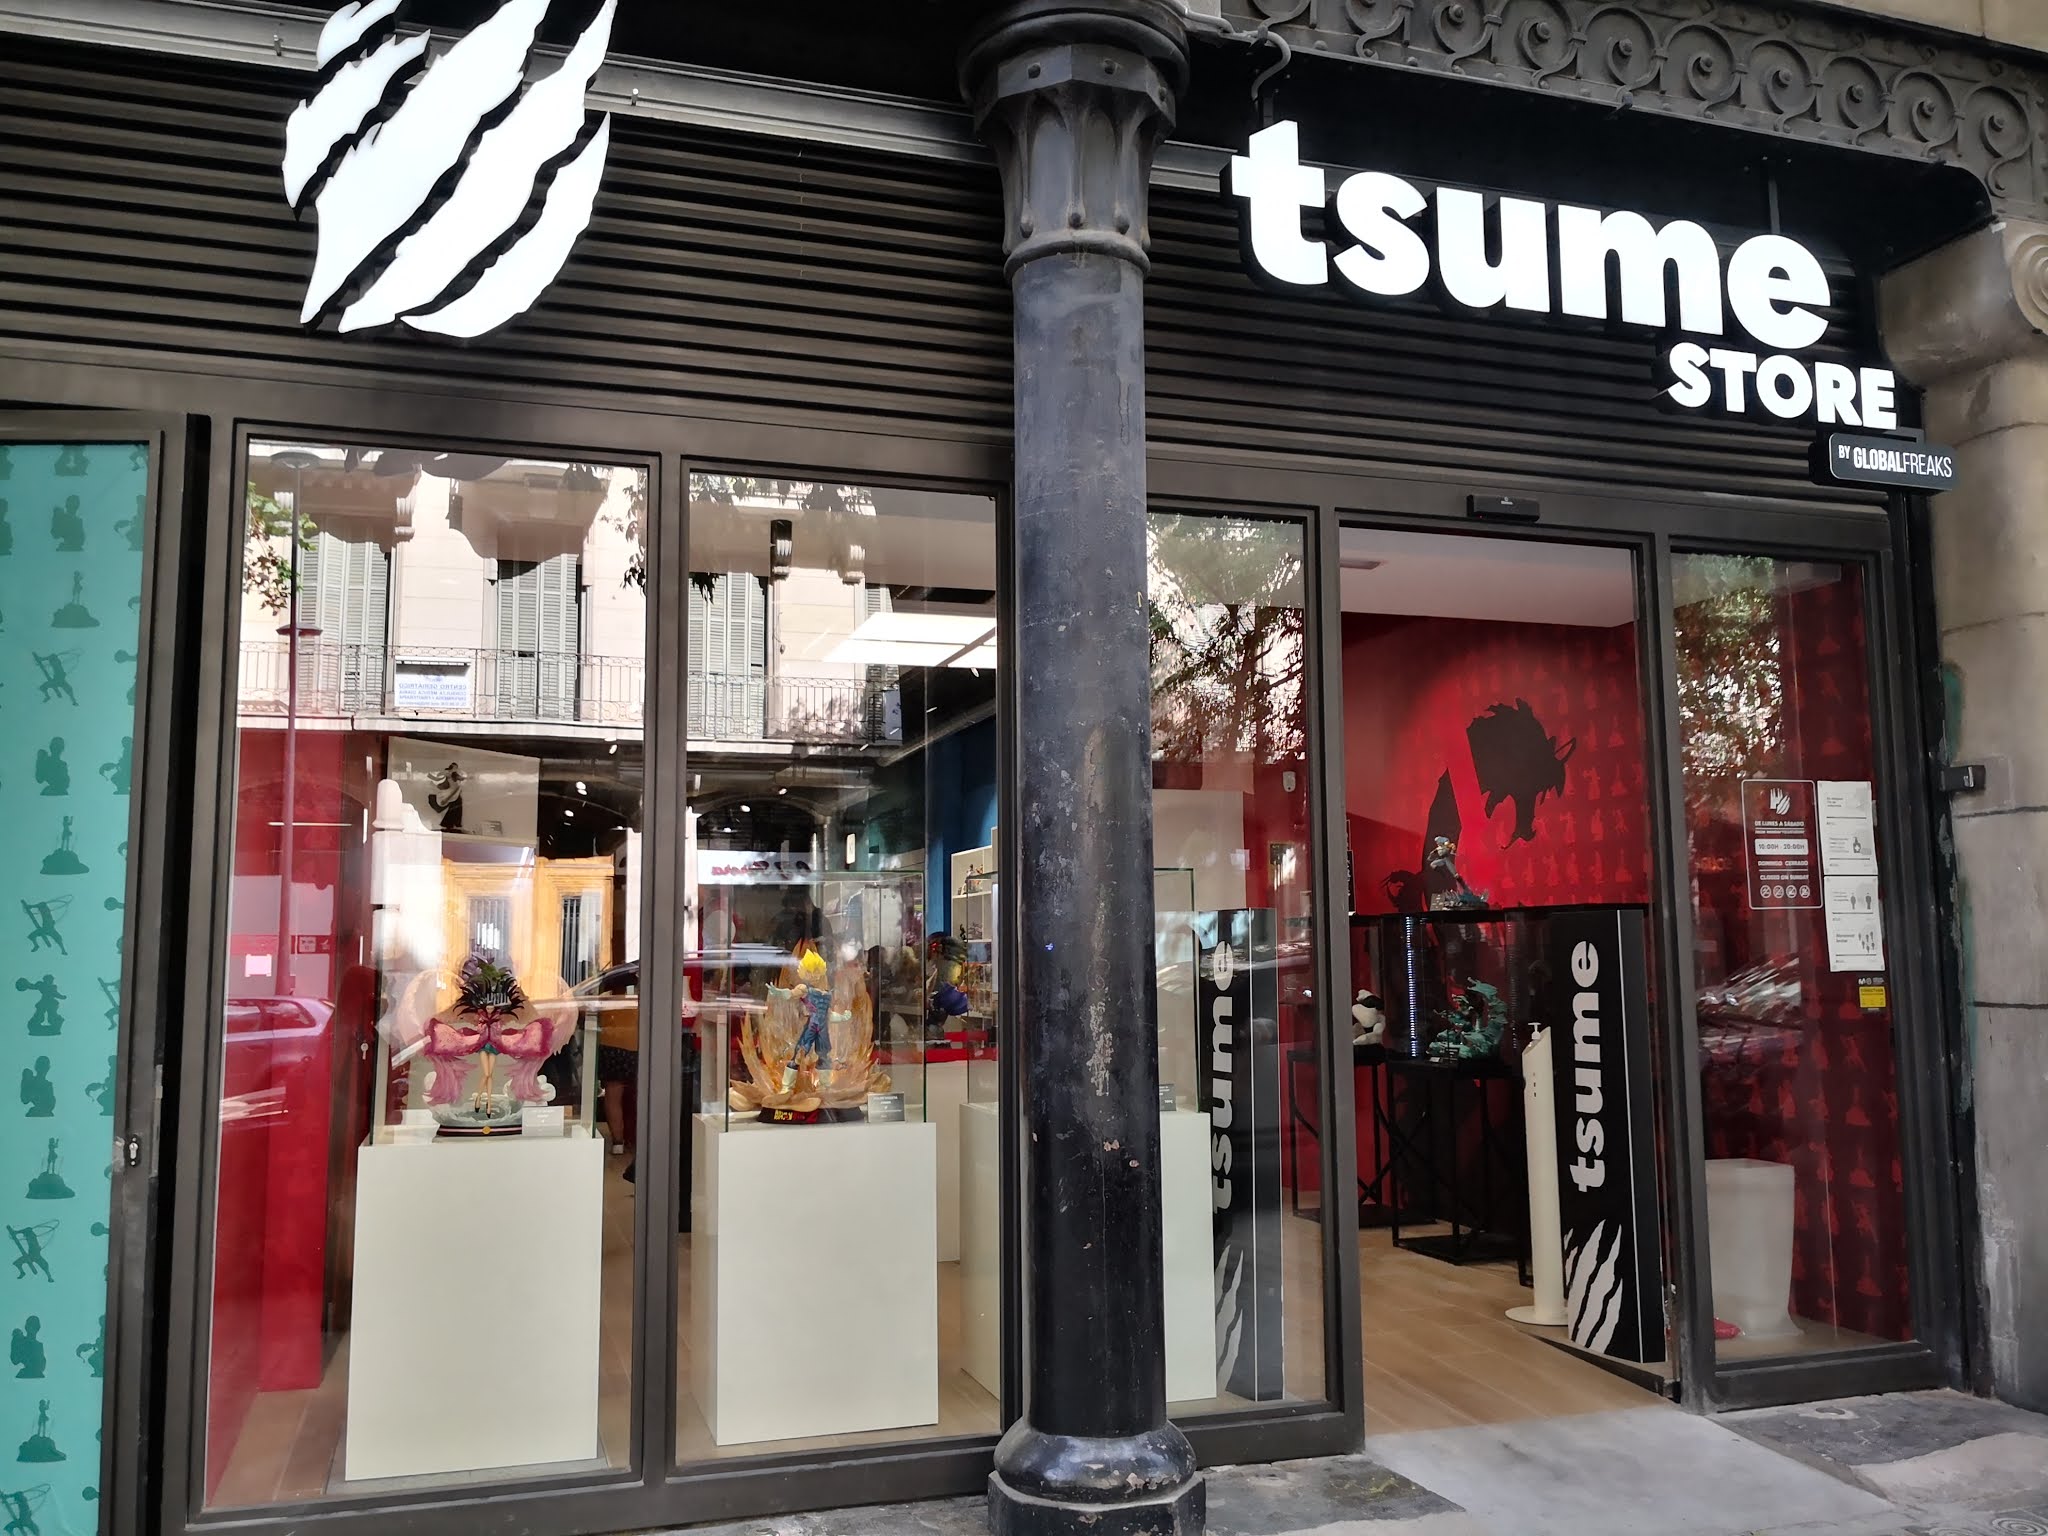 Sinfonía Empírico represa TSUME STORE, el nuevo templo de estatuas y figuras anime en Barcelona.